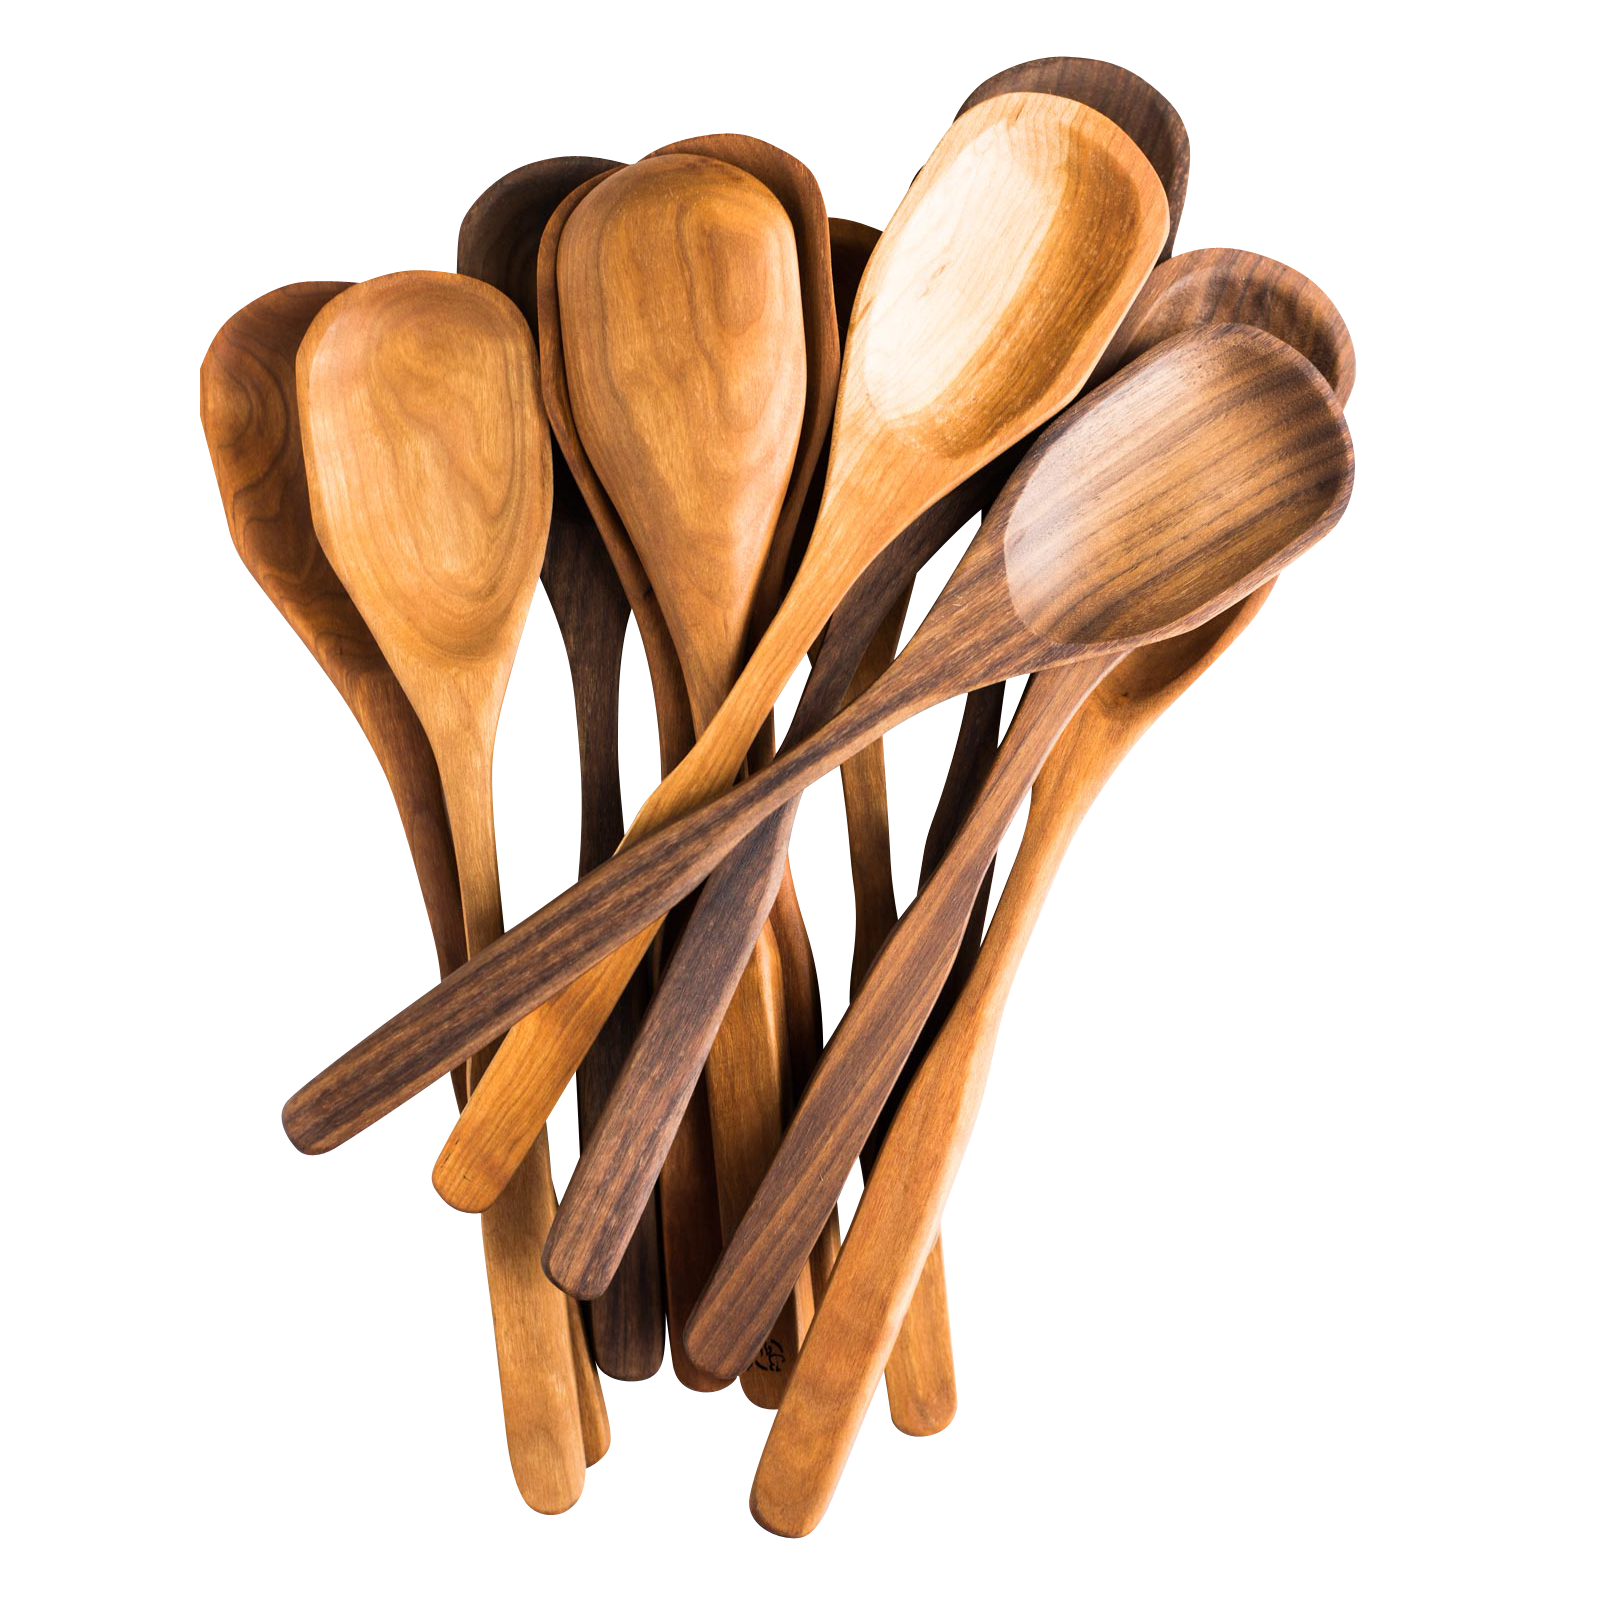 Wooden spoon. Деревянная ложка. Оркестр с деревянными ложками. Деревянная ложка клипарт.